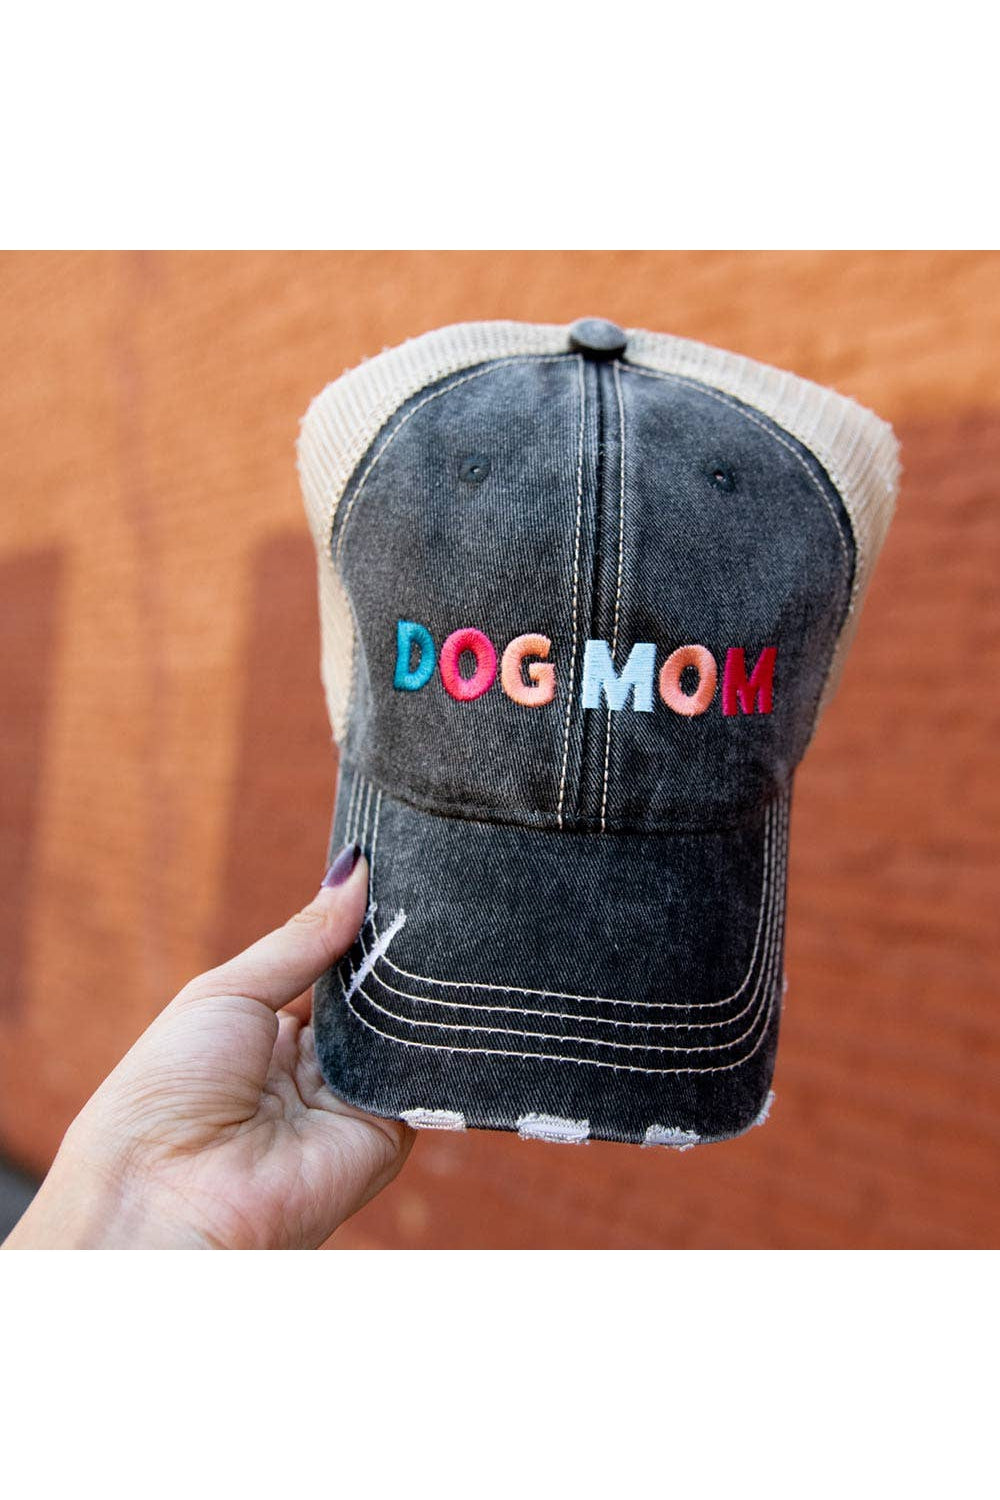 Dog Mom Multicolored Trucker Hat-Headware-Katydid-Revive Boutique